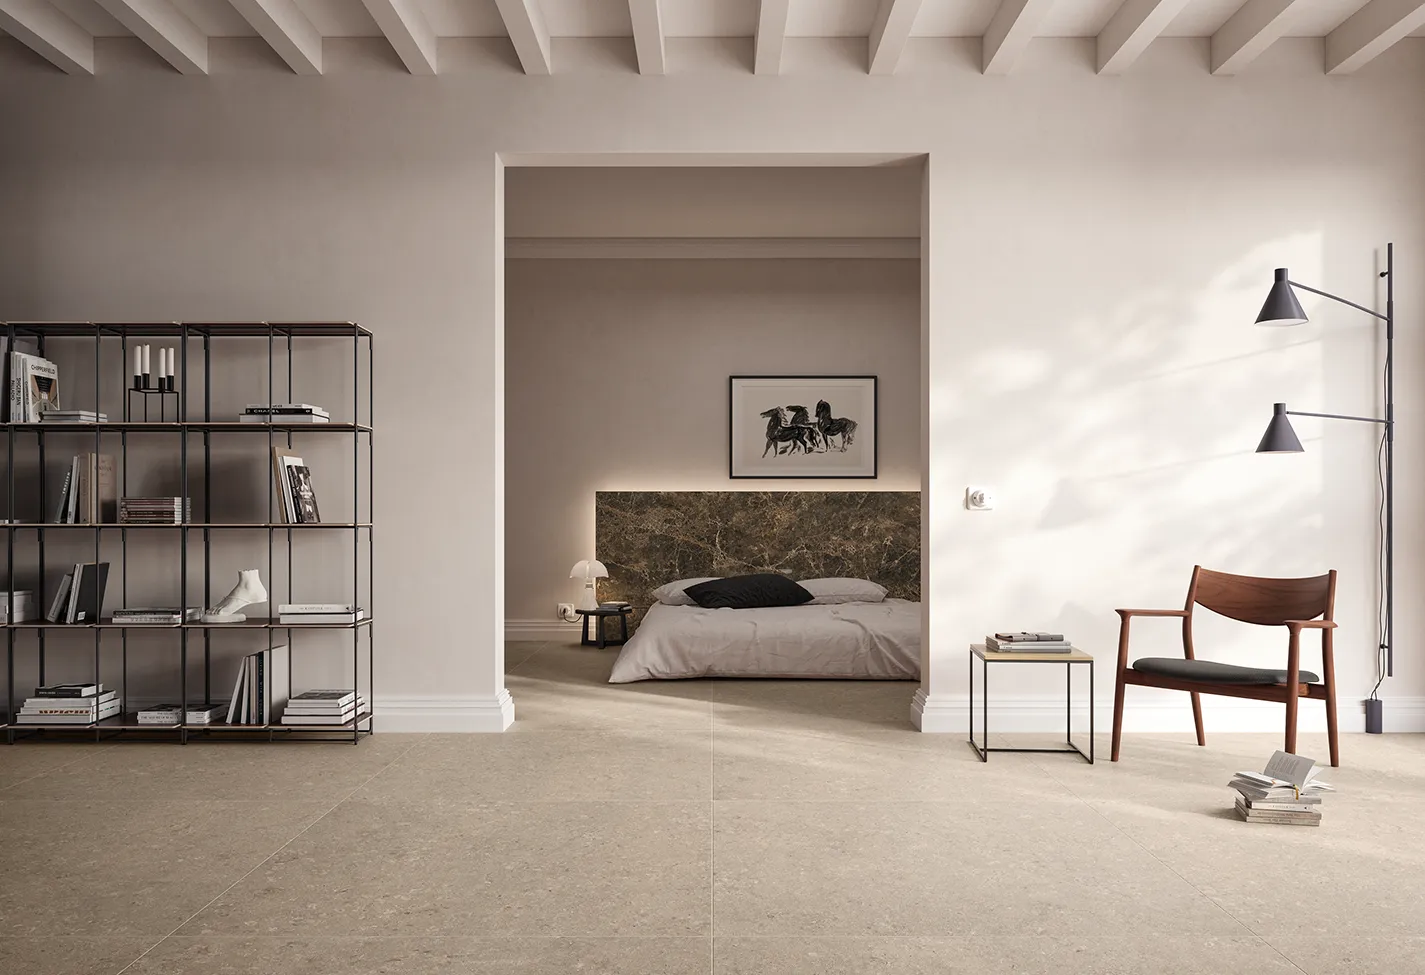 Interior minimalista y espacioso con suelo de gres porcelánico beige, estantería moderna de metal, vista del dormitorio elegante y muebles de diseño.